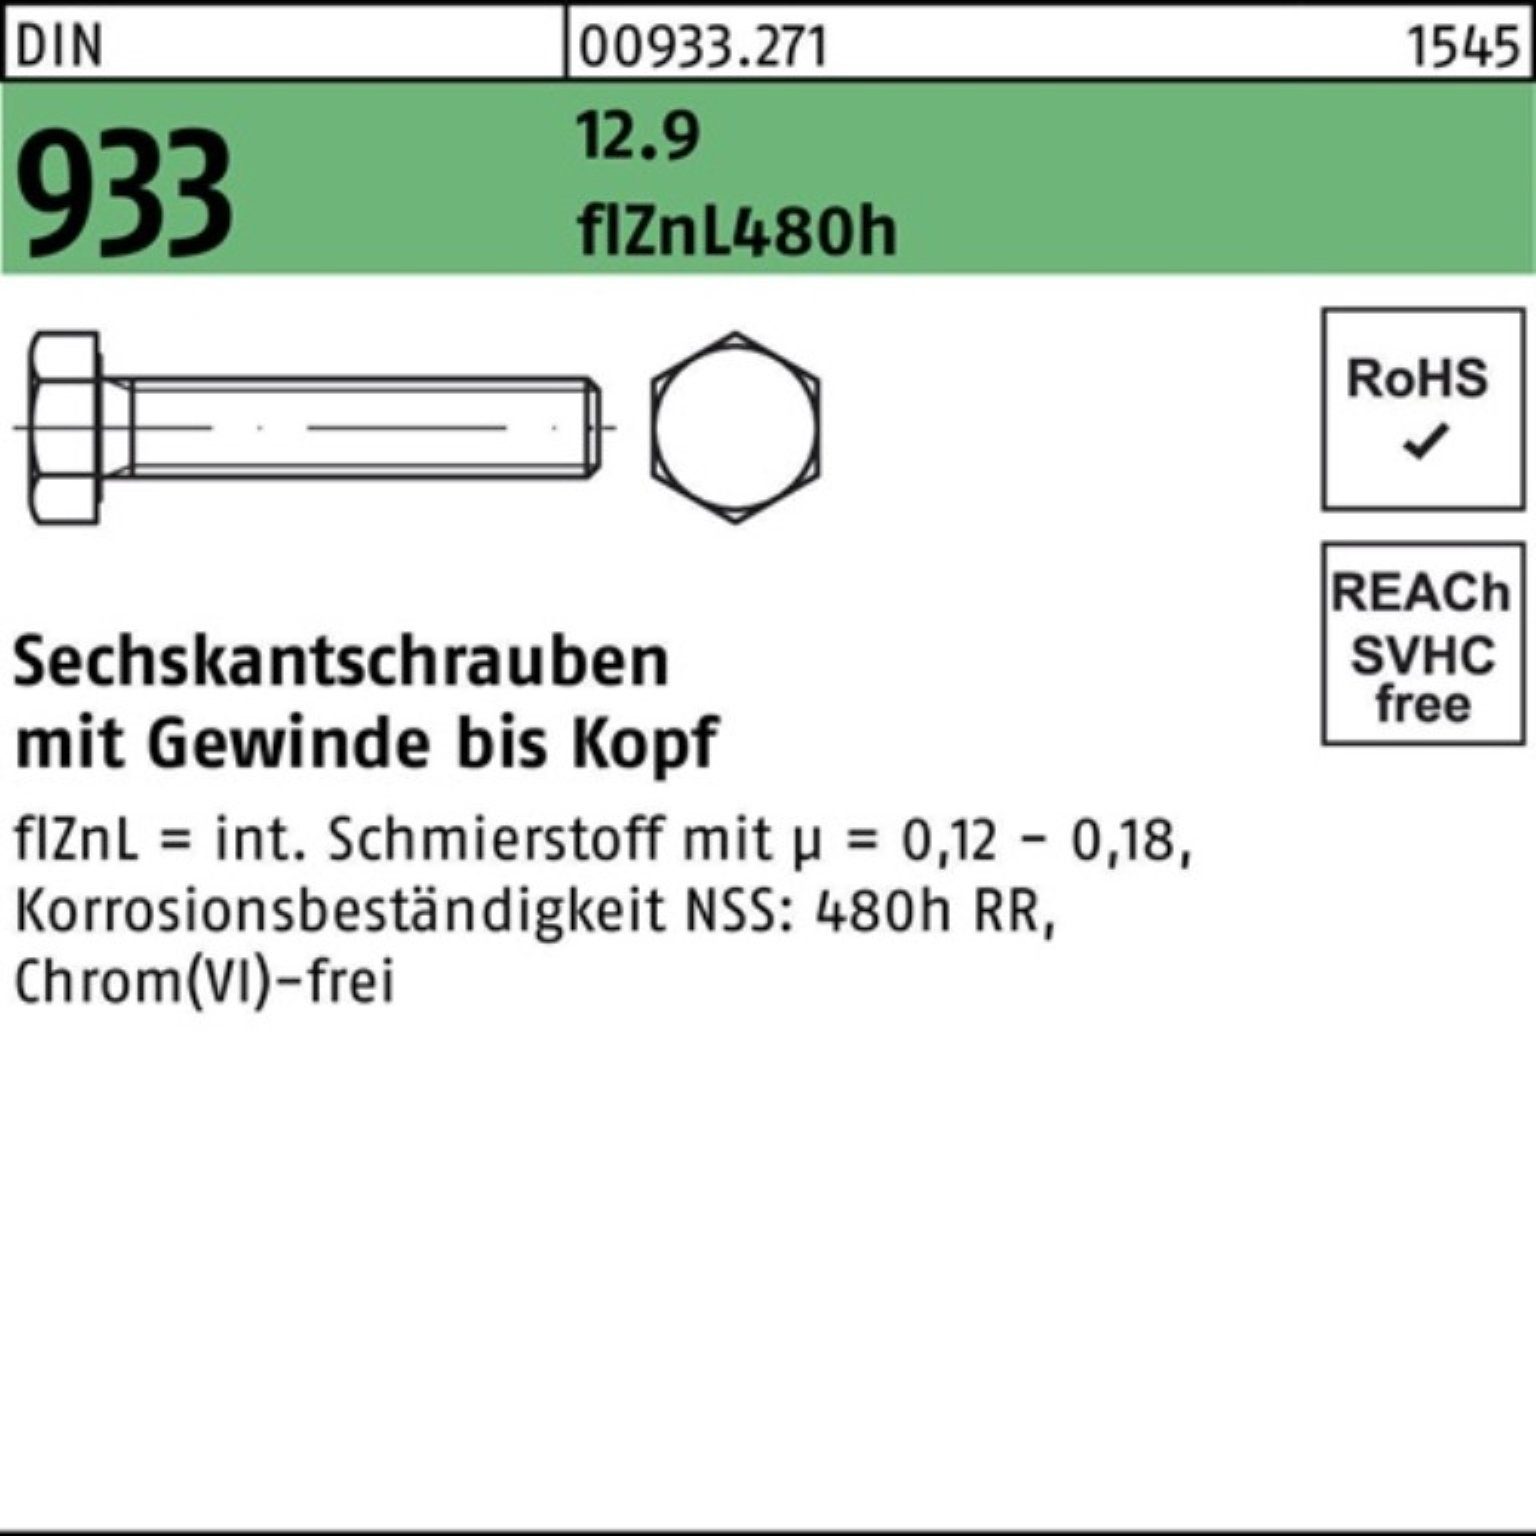 Reyher Sechskantschraube 200er Pack Sechskantschraube DIN 933 VG M8x 16 12.9 flZnL 480h zinklam